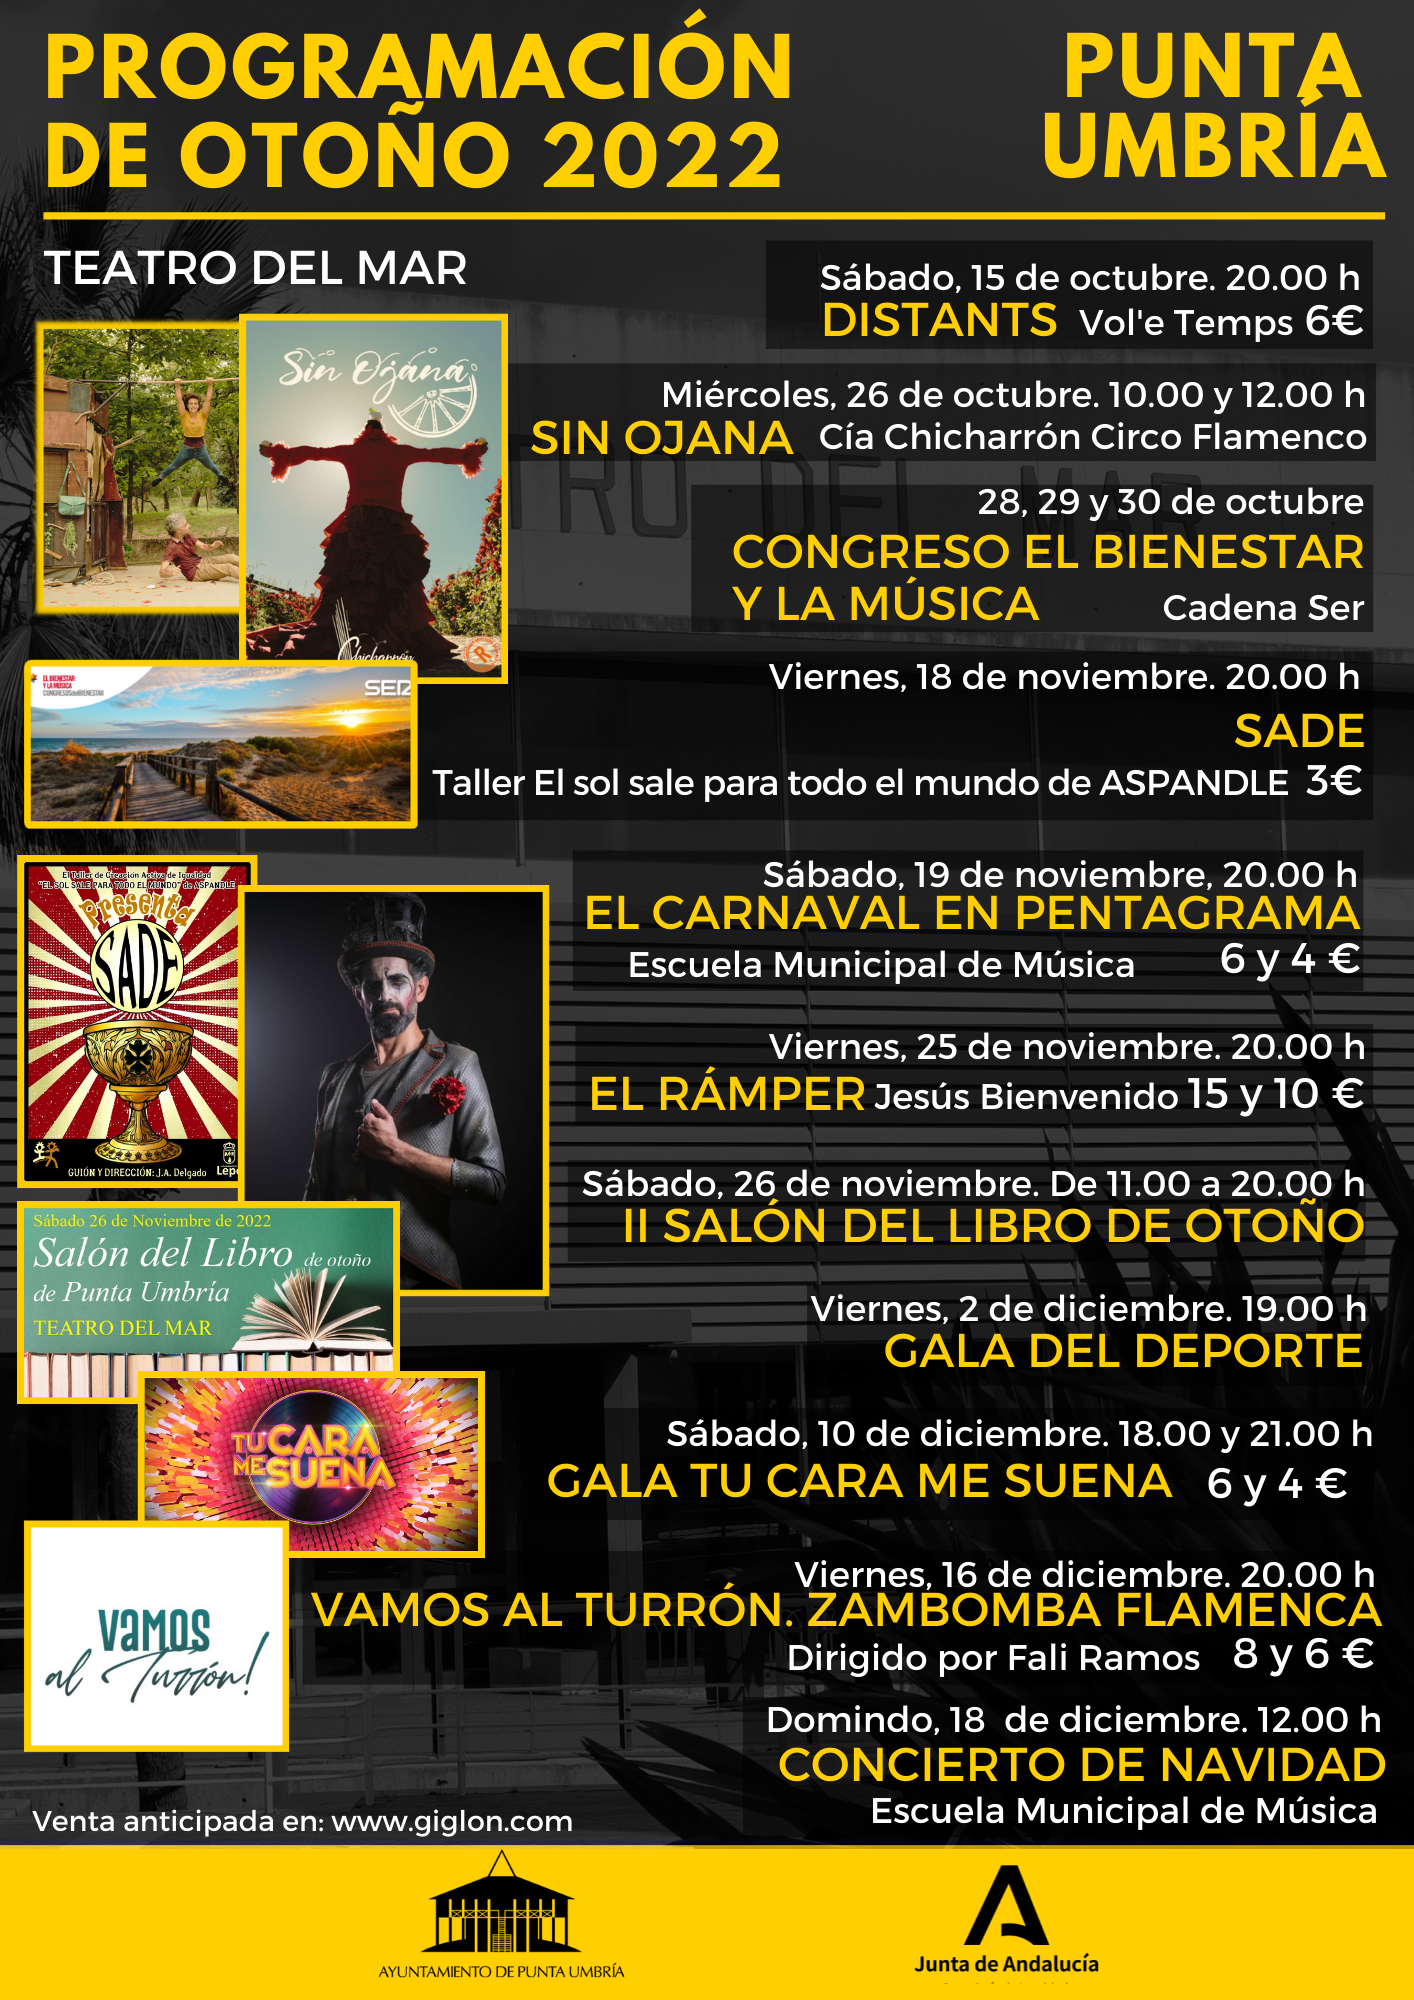 Punta Umbría cierra un completo programa cultural de Otoño con once espectáculos en el Teatro del Mar